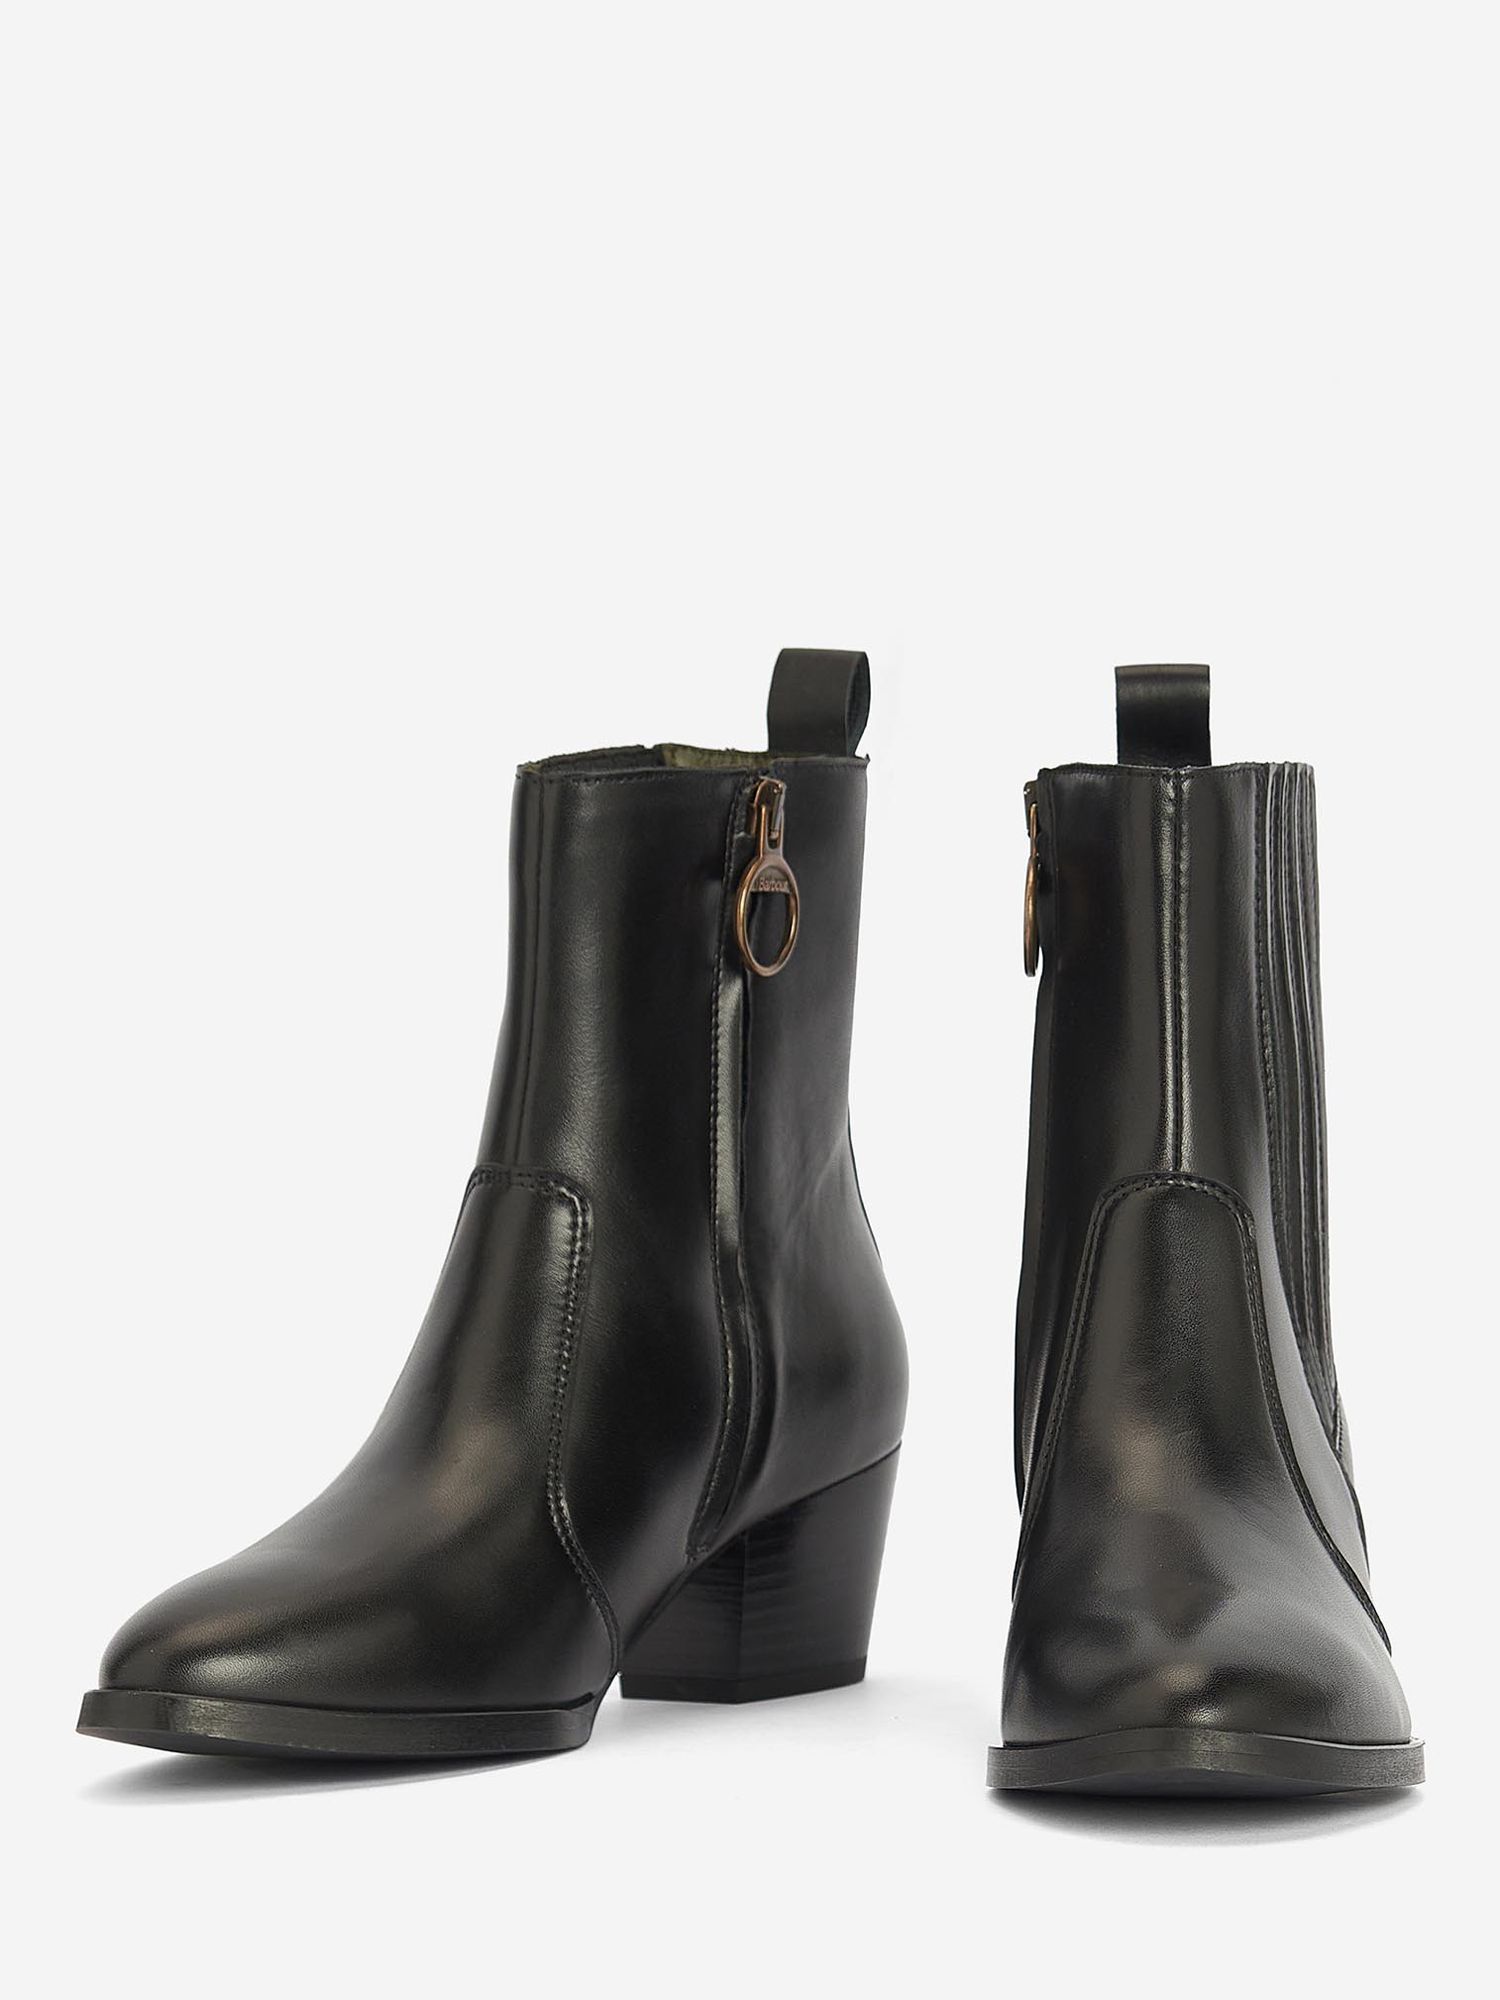 Barbour Elsa Chelsea Leather Boots, Black, 5